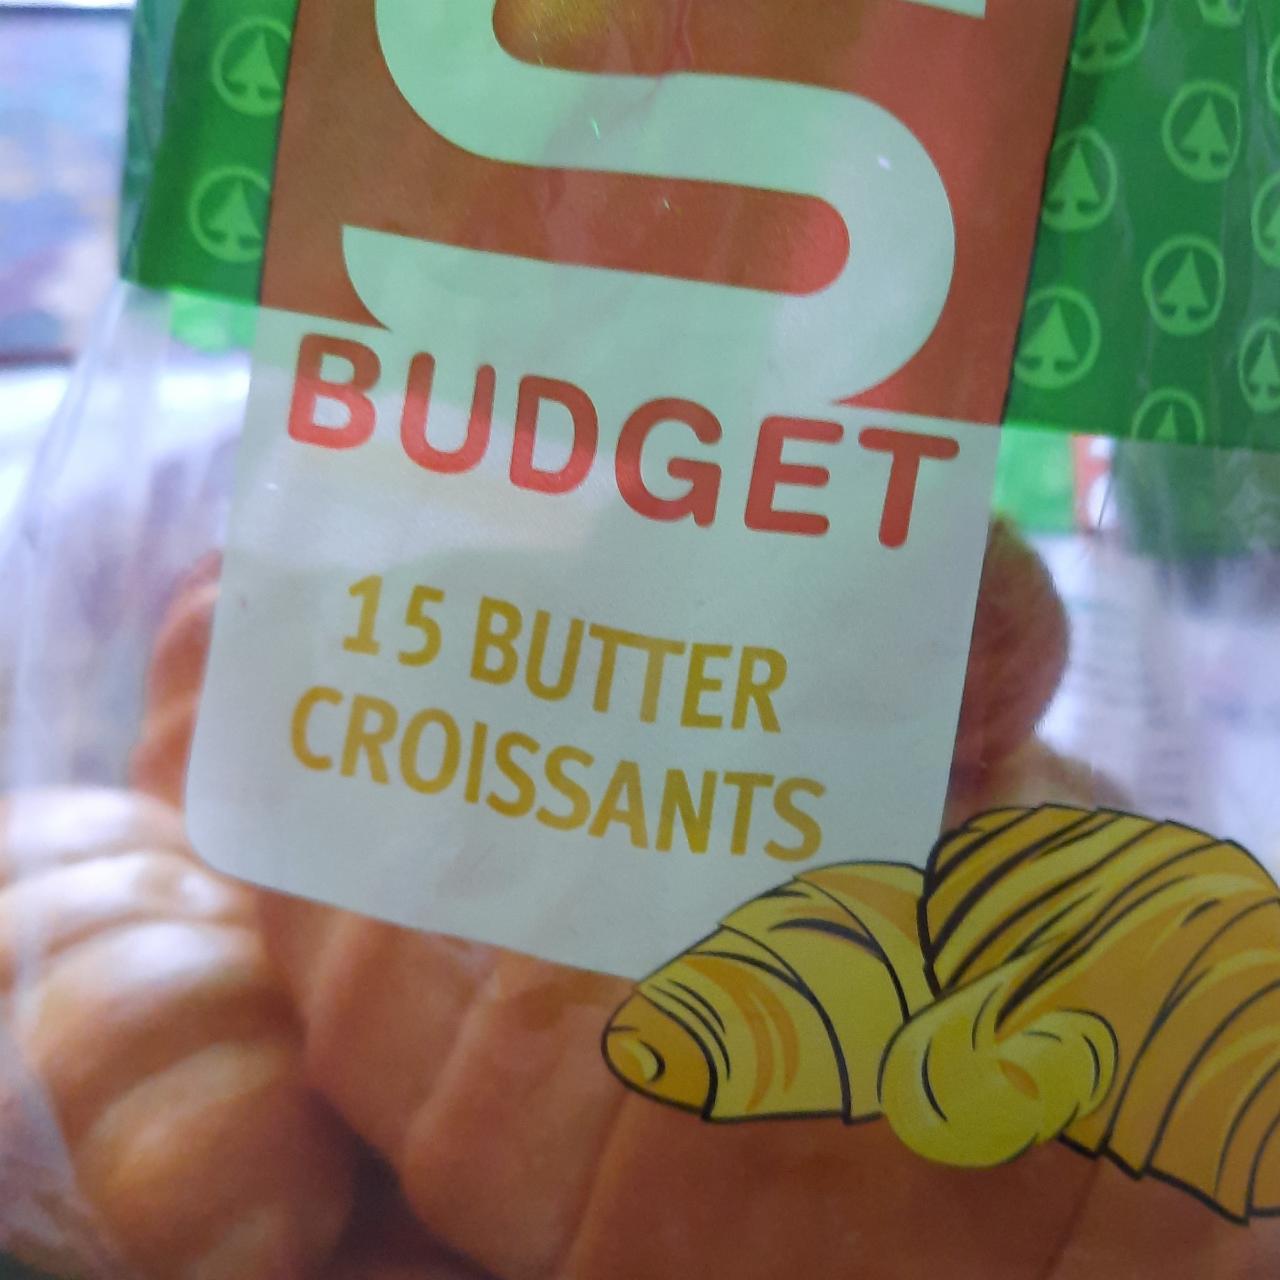 Fotografie - Butter croissants S Budget